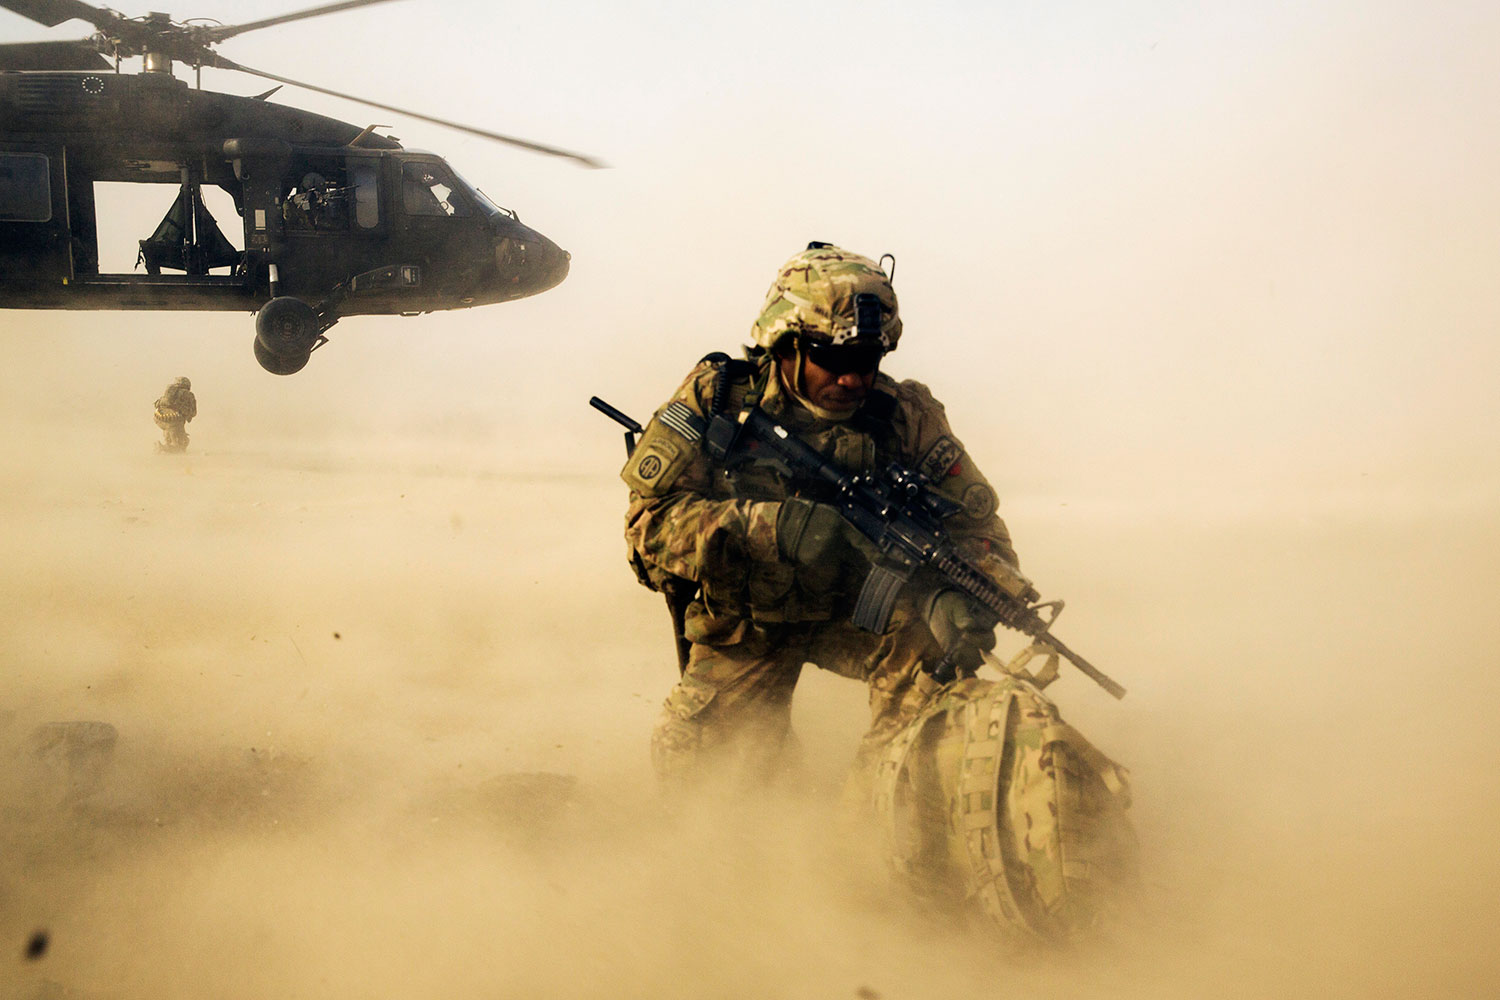 “Soy el capitán James del Ejército de EEUU, ayúdame a sacar 8 millones de dólares de Afganistán”